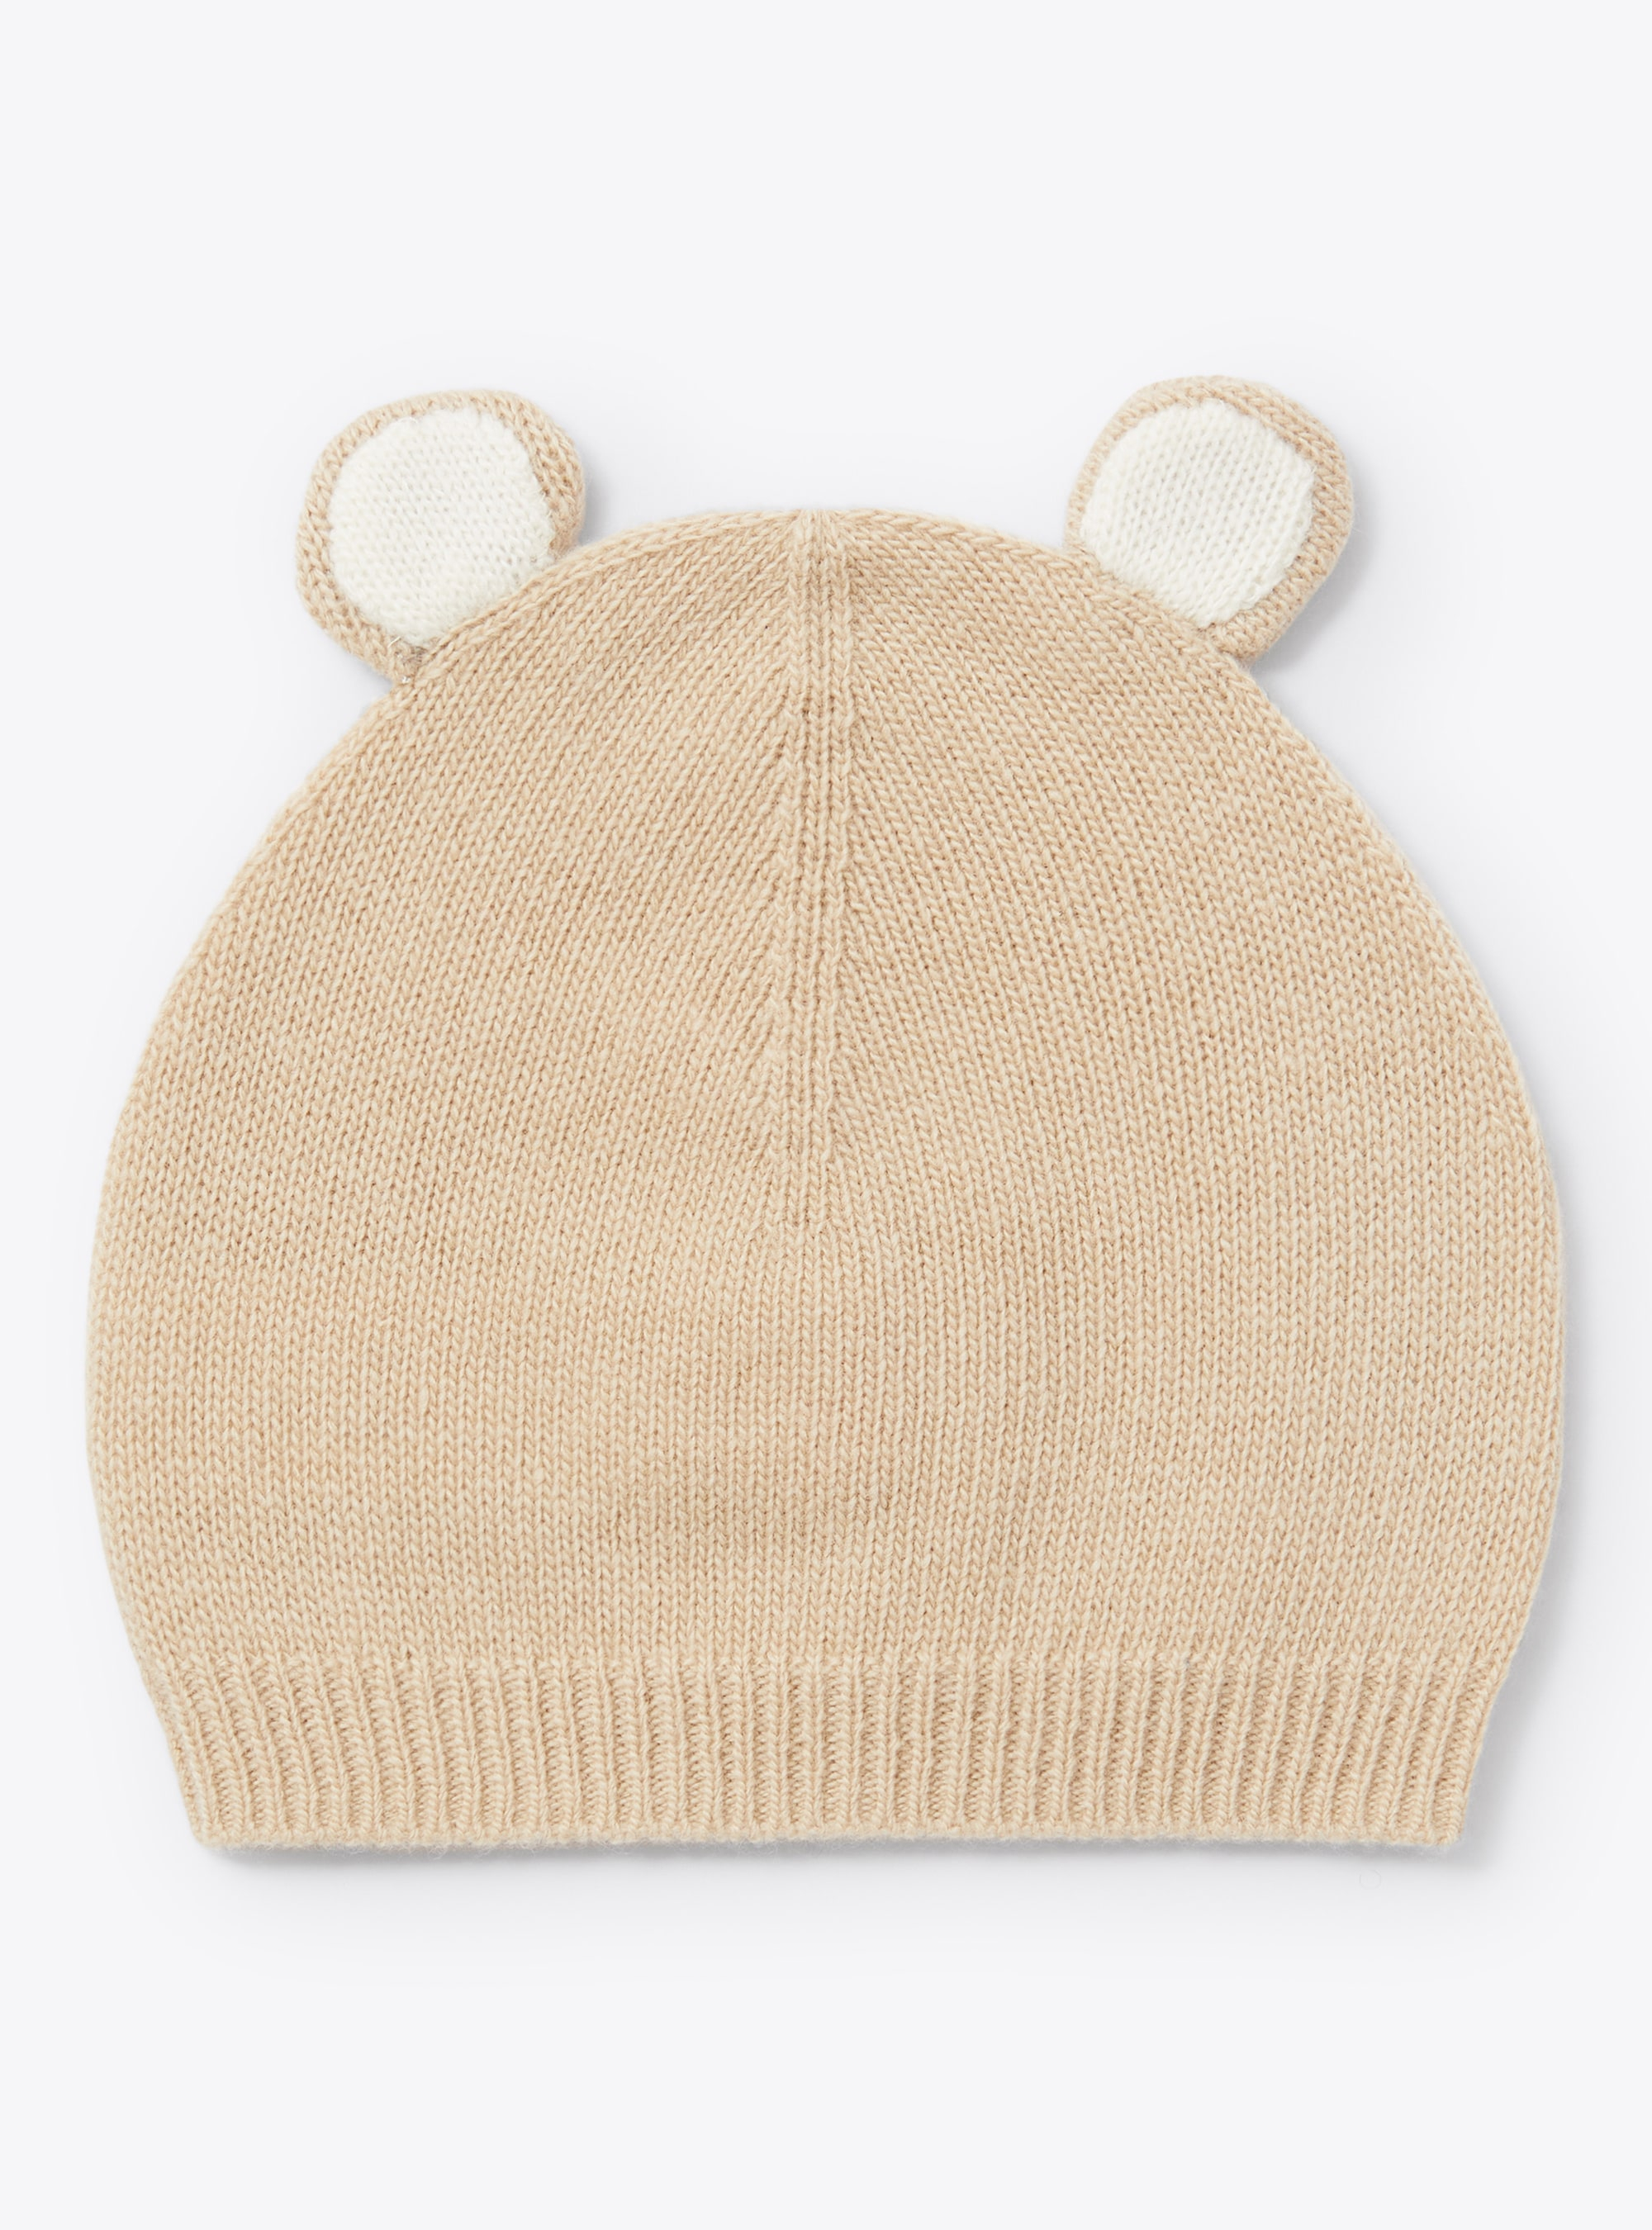 Baby boys' hat with little ears - Beige | Il Gufo